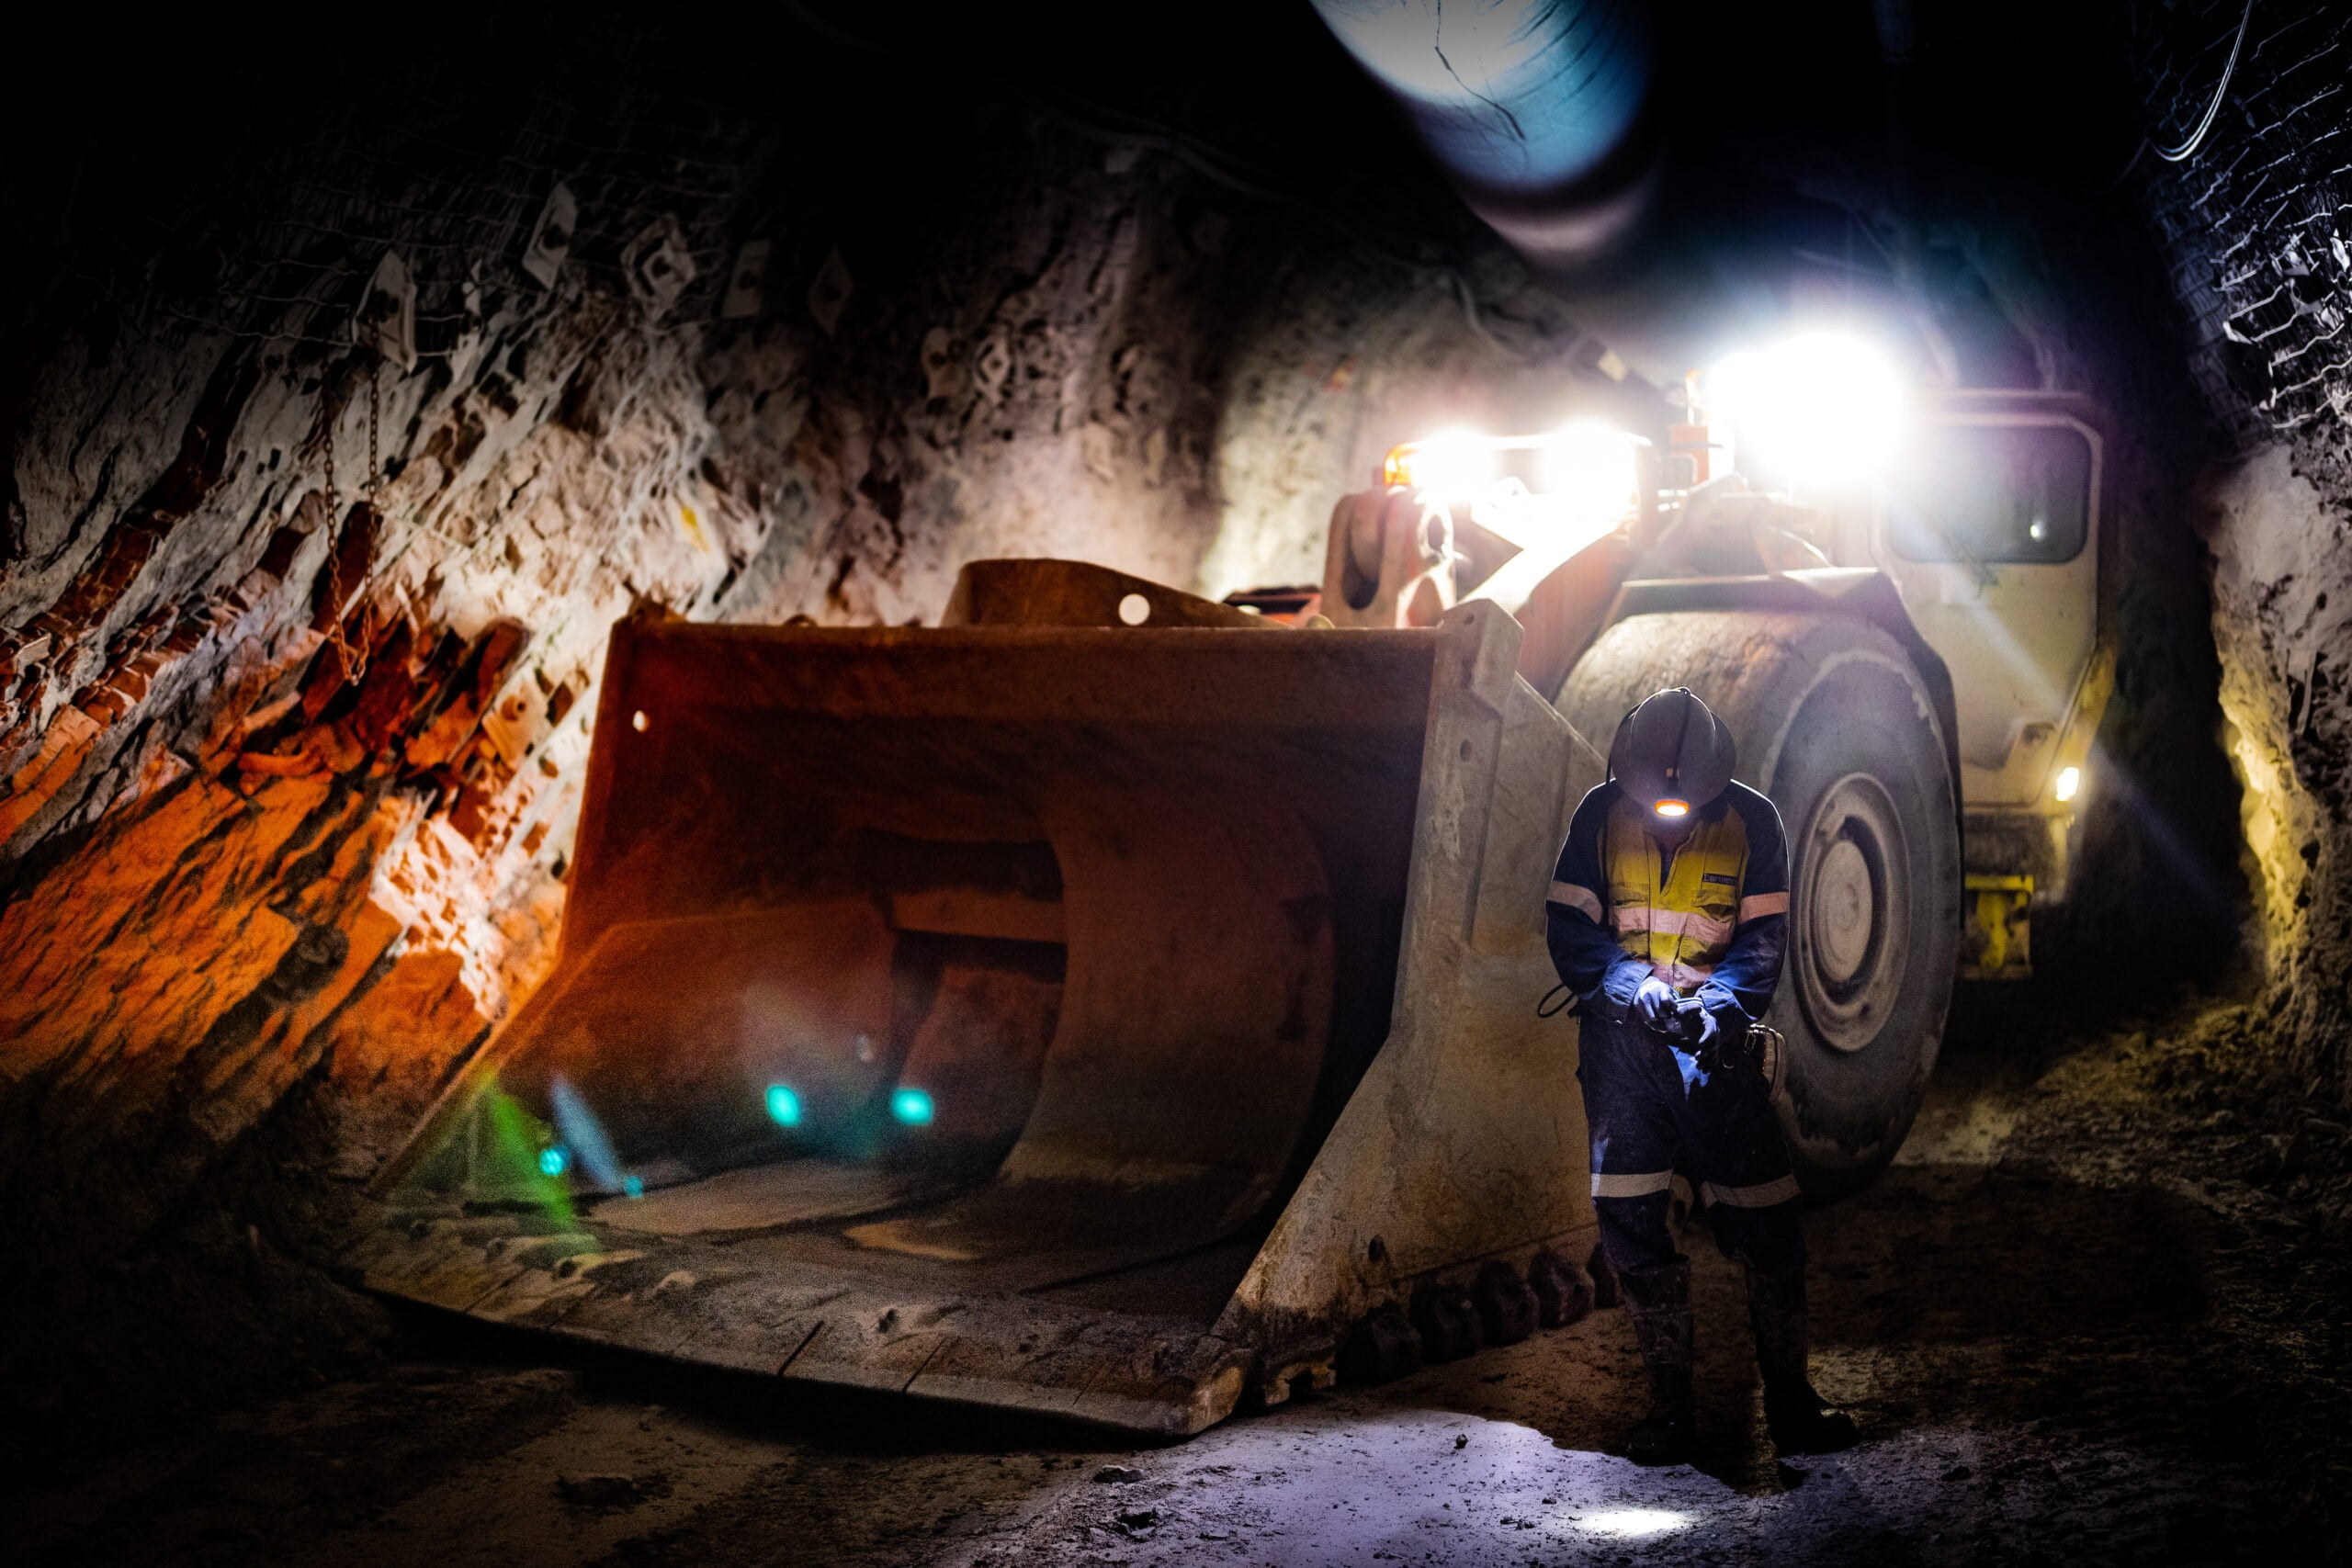 Pedestrian Safety the Focus of Underground Mine Technology Partnership